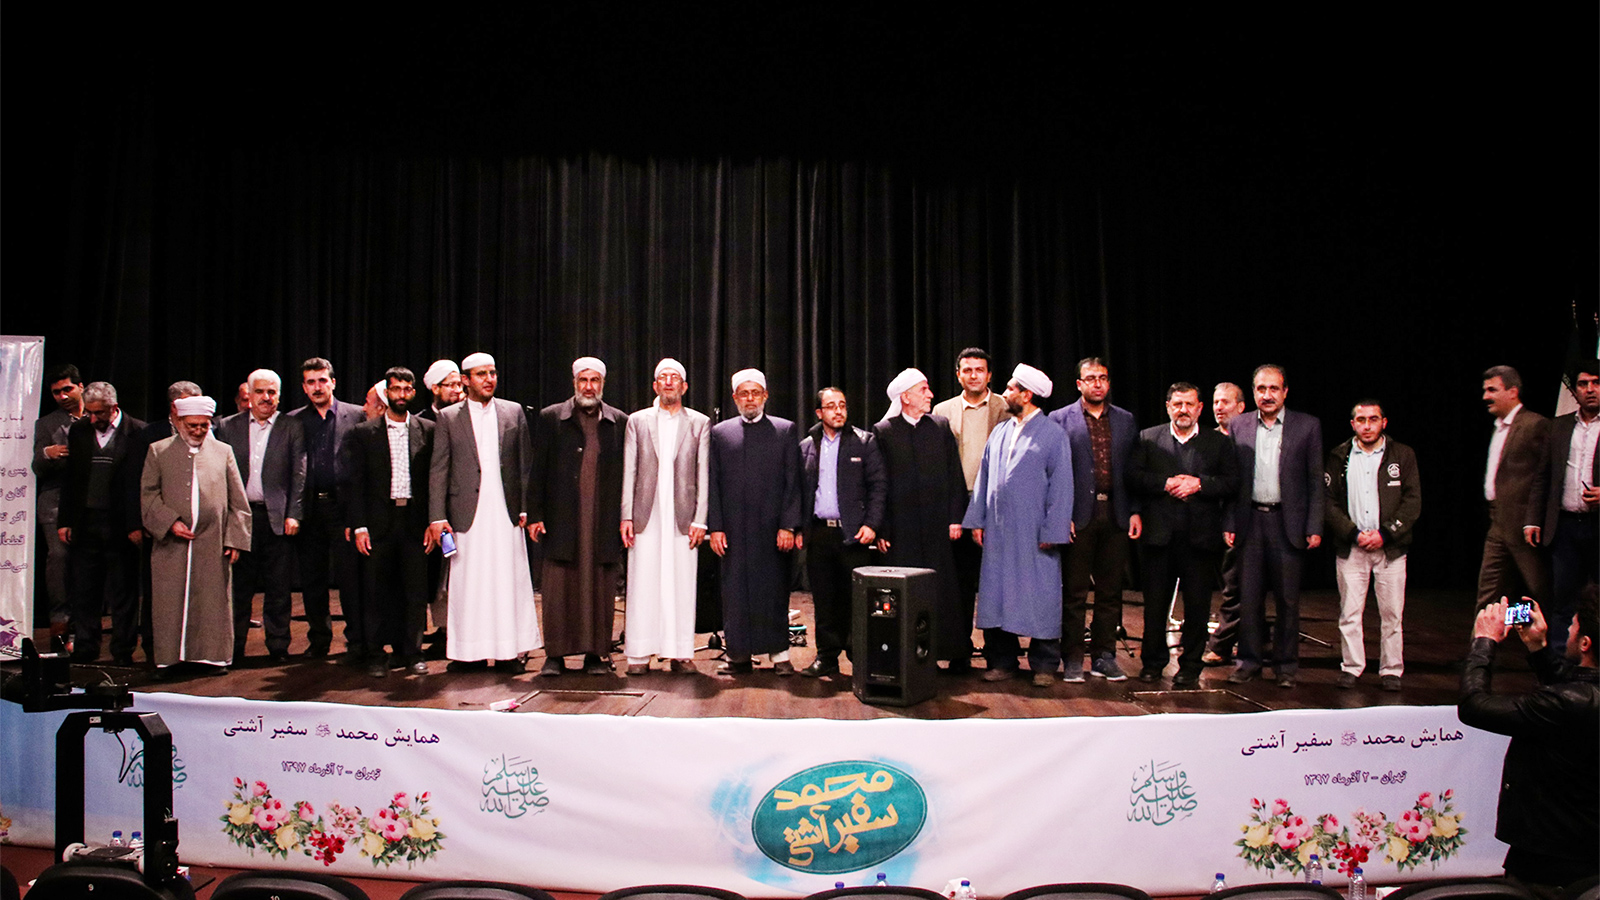 ‪جماعة الدعوة والإصلاح السنية نظمت الاحتفالية‬ (الجزيرة)